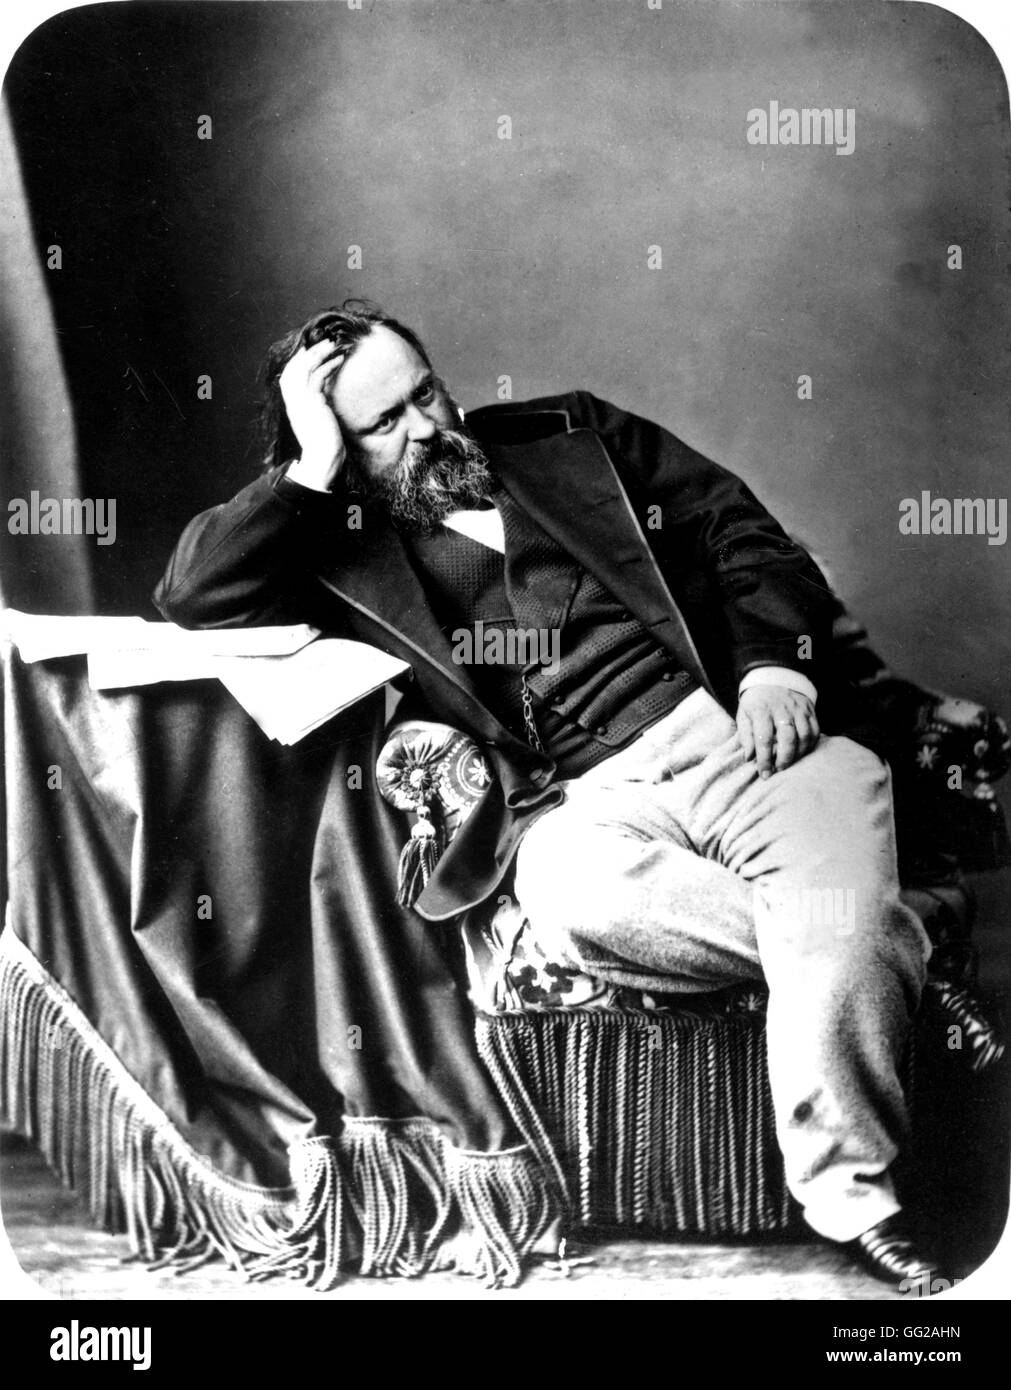 Herzen (1812-1870), escritor y filósofo ruso del siglo XIX Rusia en París. Biblioteca Nacional Foto de stock